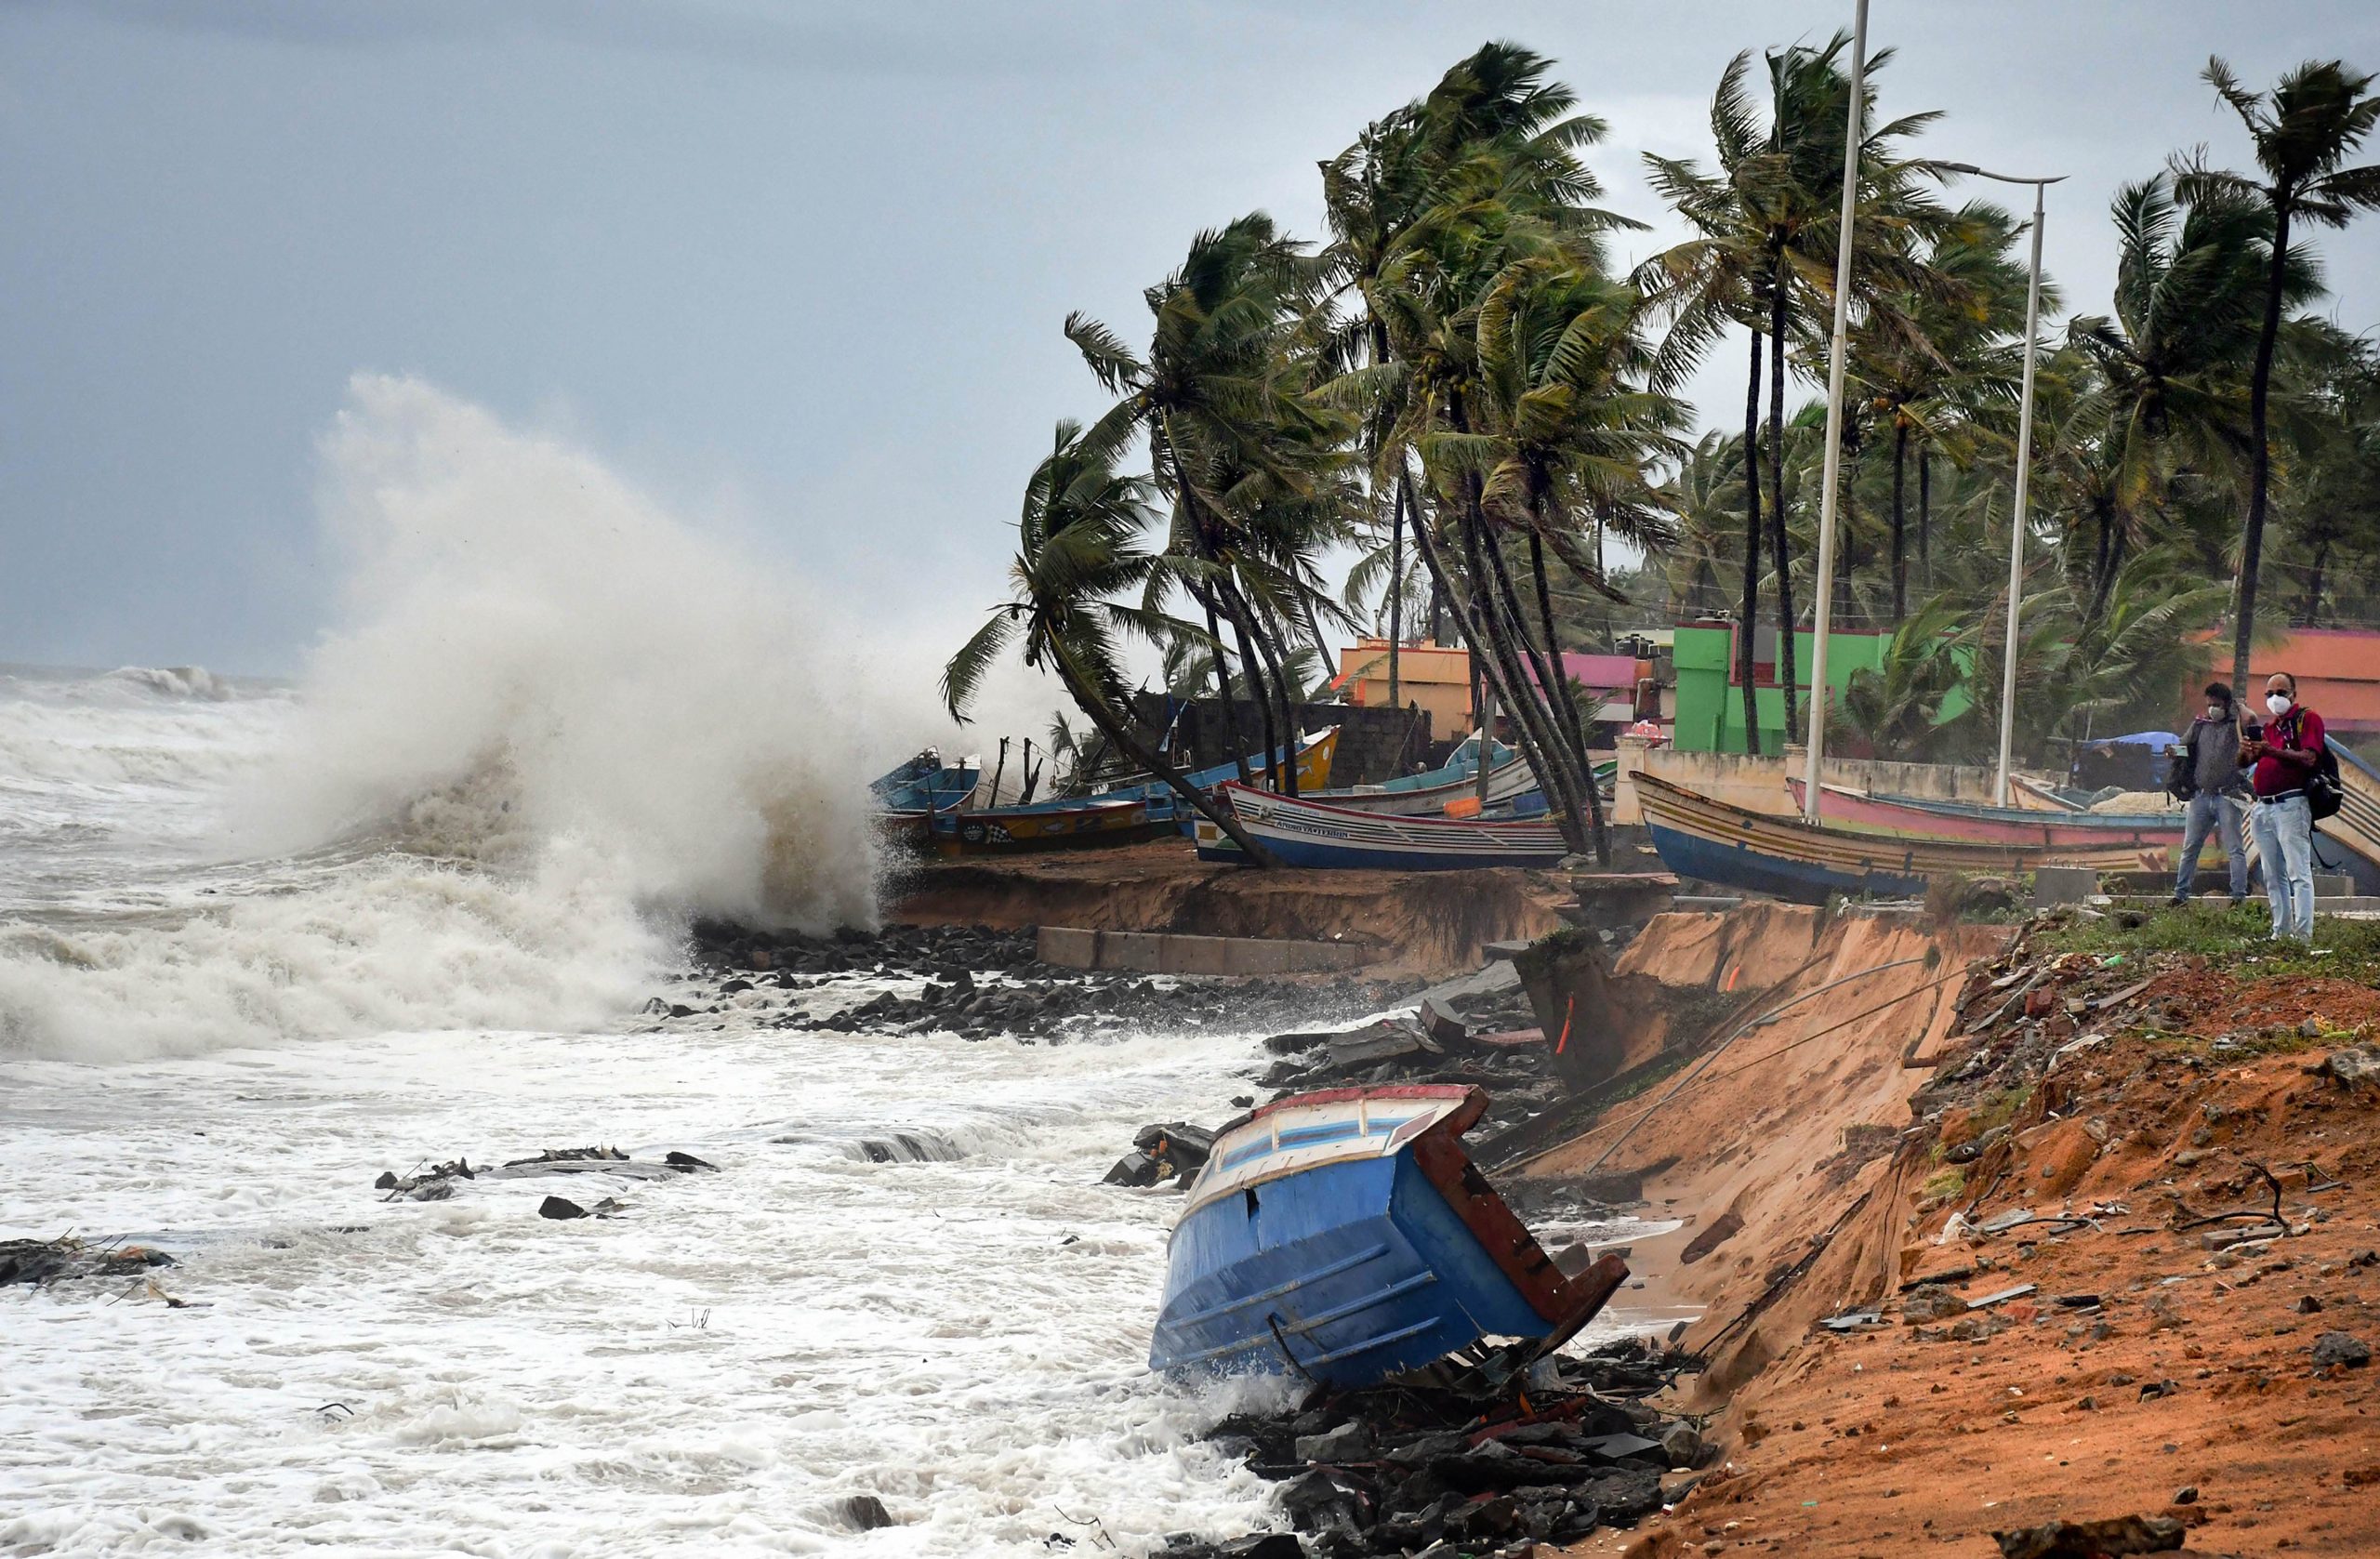 Cyclone Tauktae तूफान से निपटने के लिए गुजरात में तैनात हुई NDRF की टीम, जानें डिटेल्स